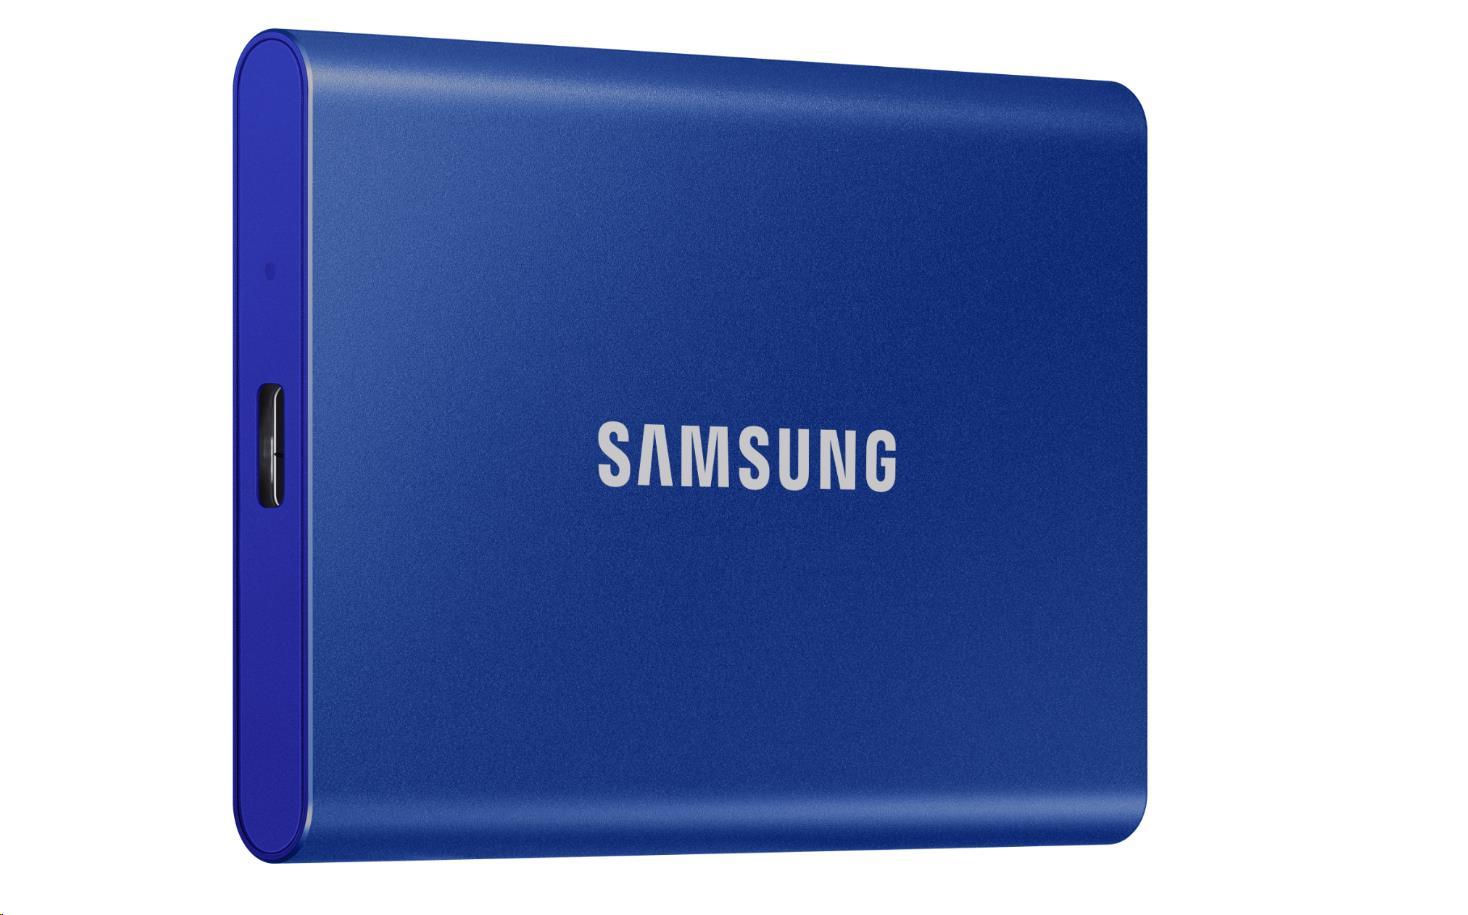 Externý disk SSD Samsung - 1 TB - modrý6 